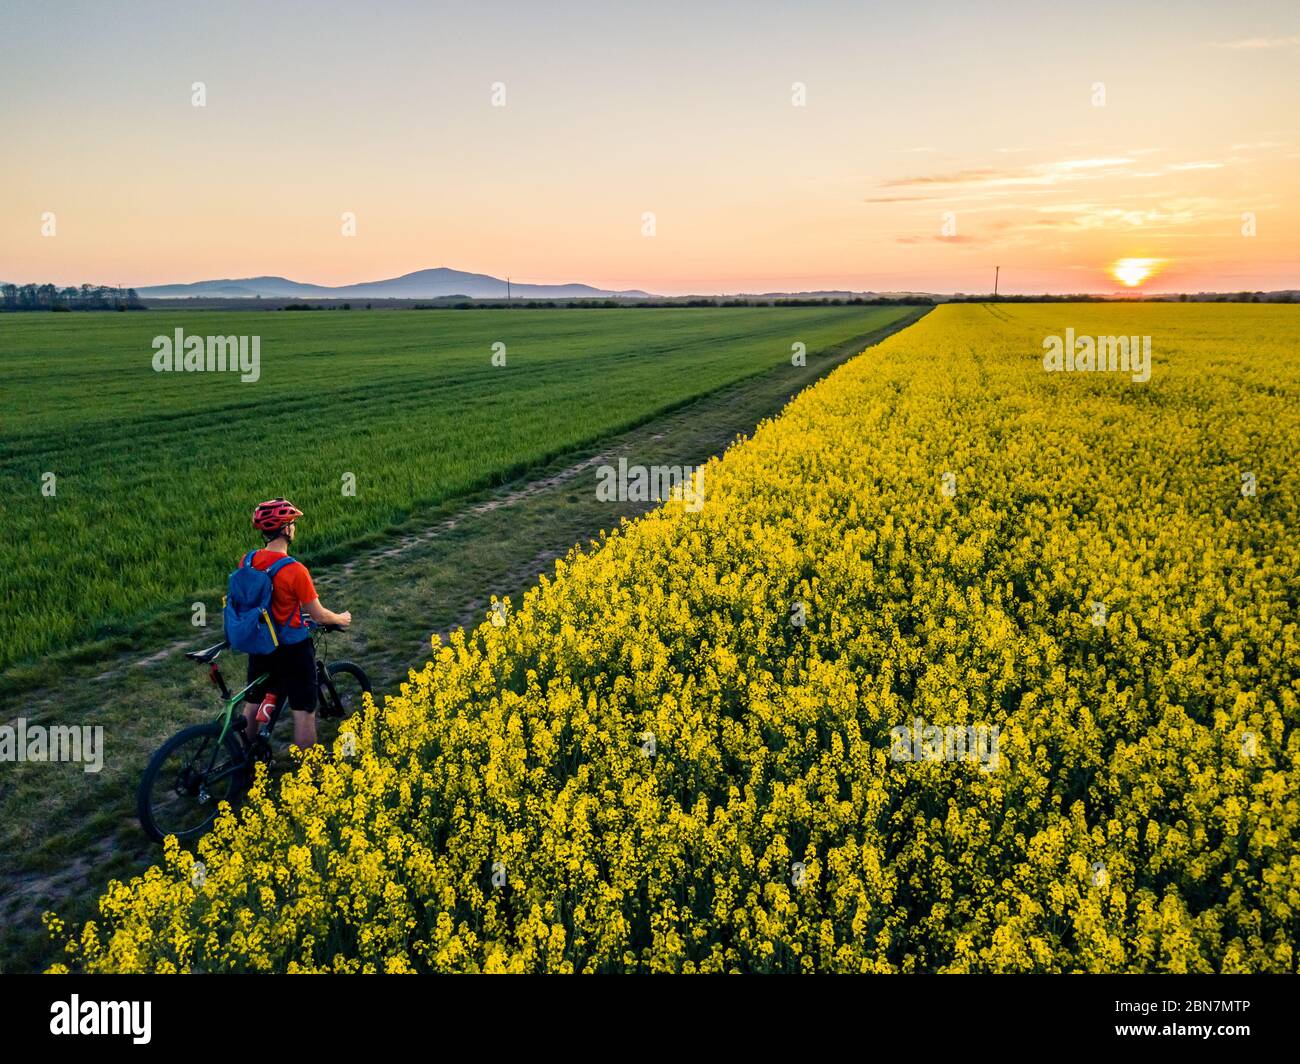 Mann, der auf der Landstraße Mountainbike fährt. Blick auf den Sonnenuntergang zwischen gelben Colza Felder. Radsportler mit Helm und Rucksack, inspirierende Landschaft Stockfoto